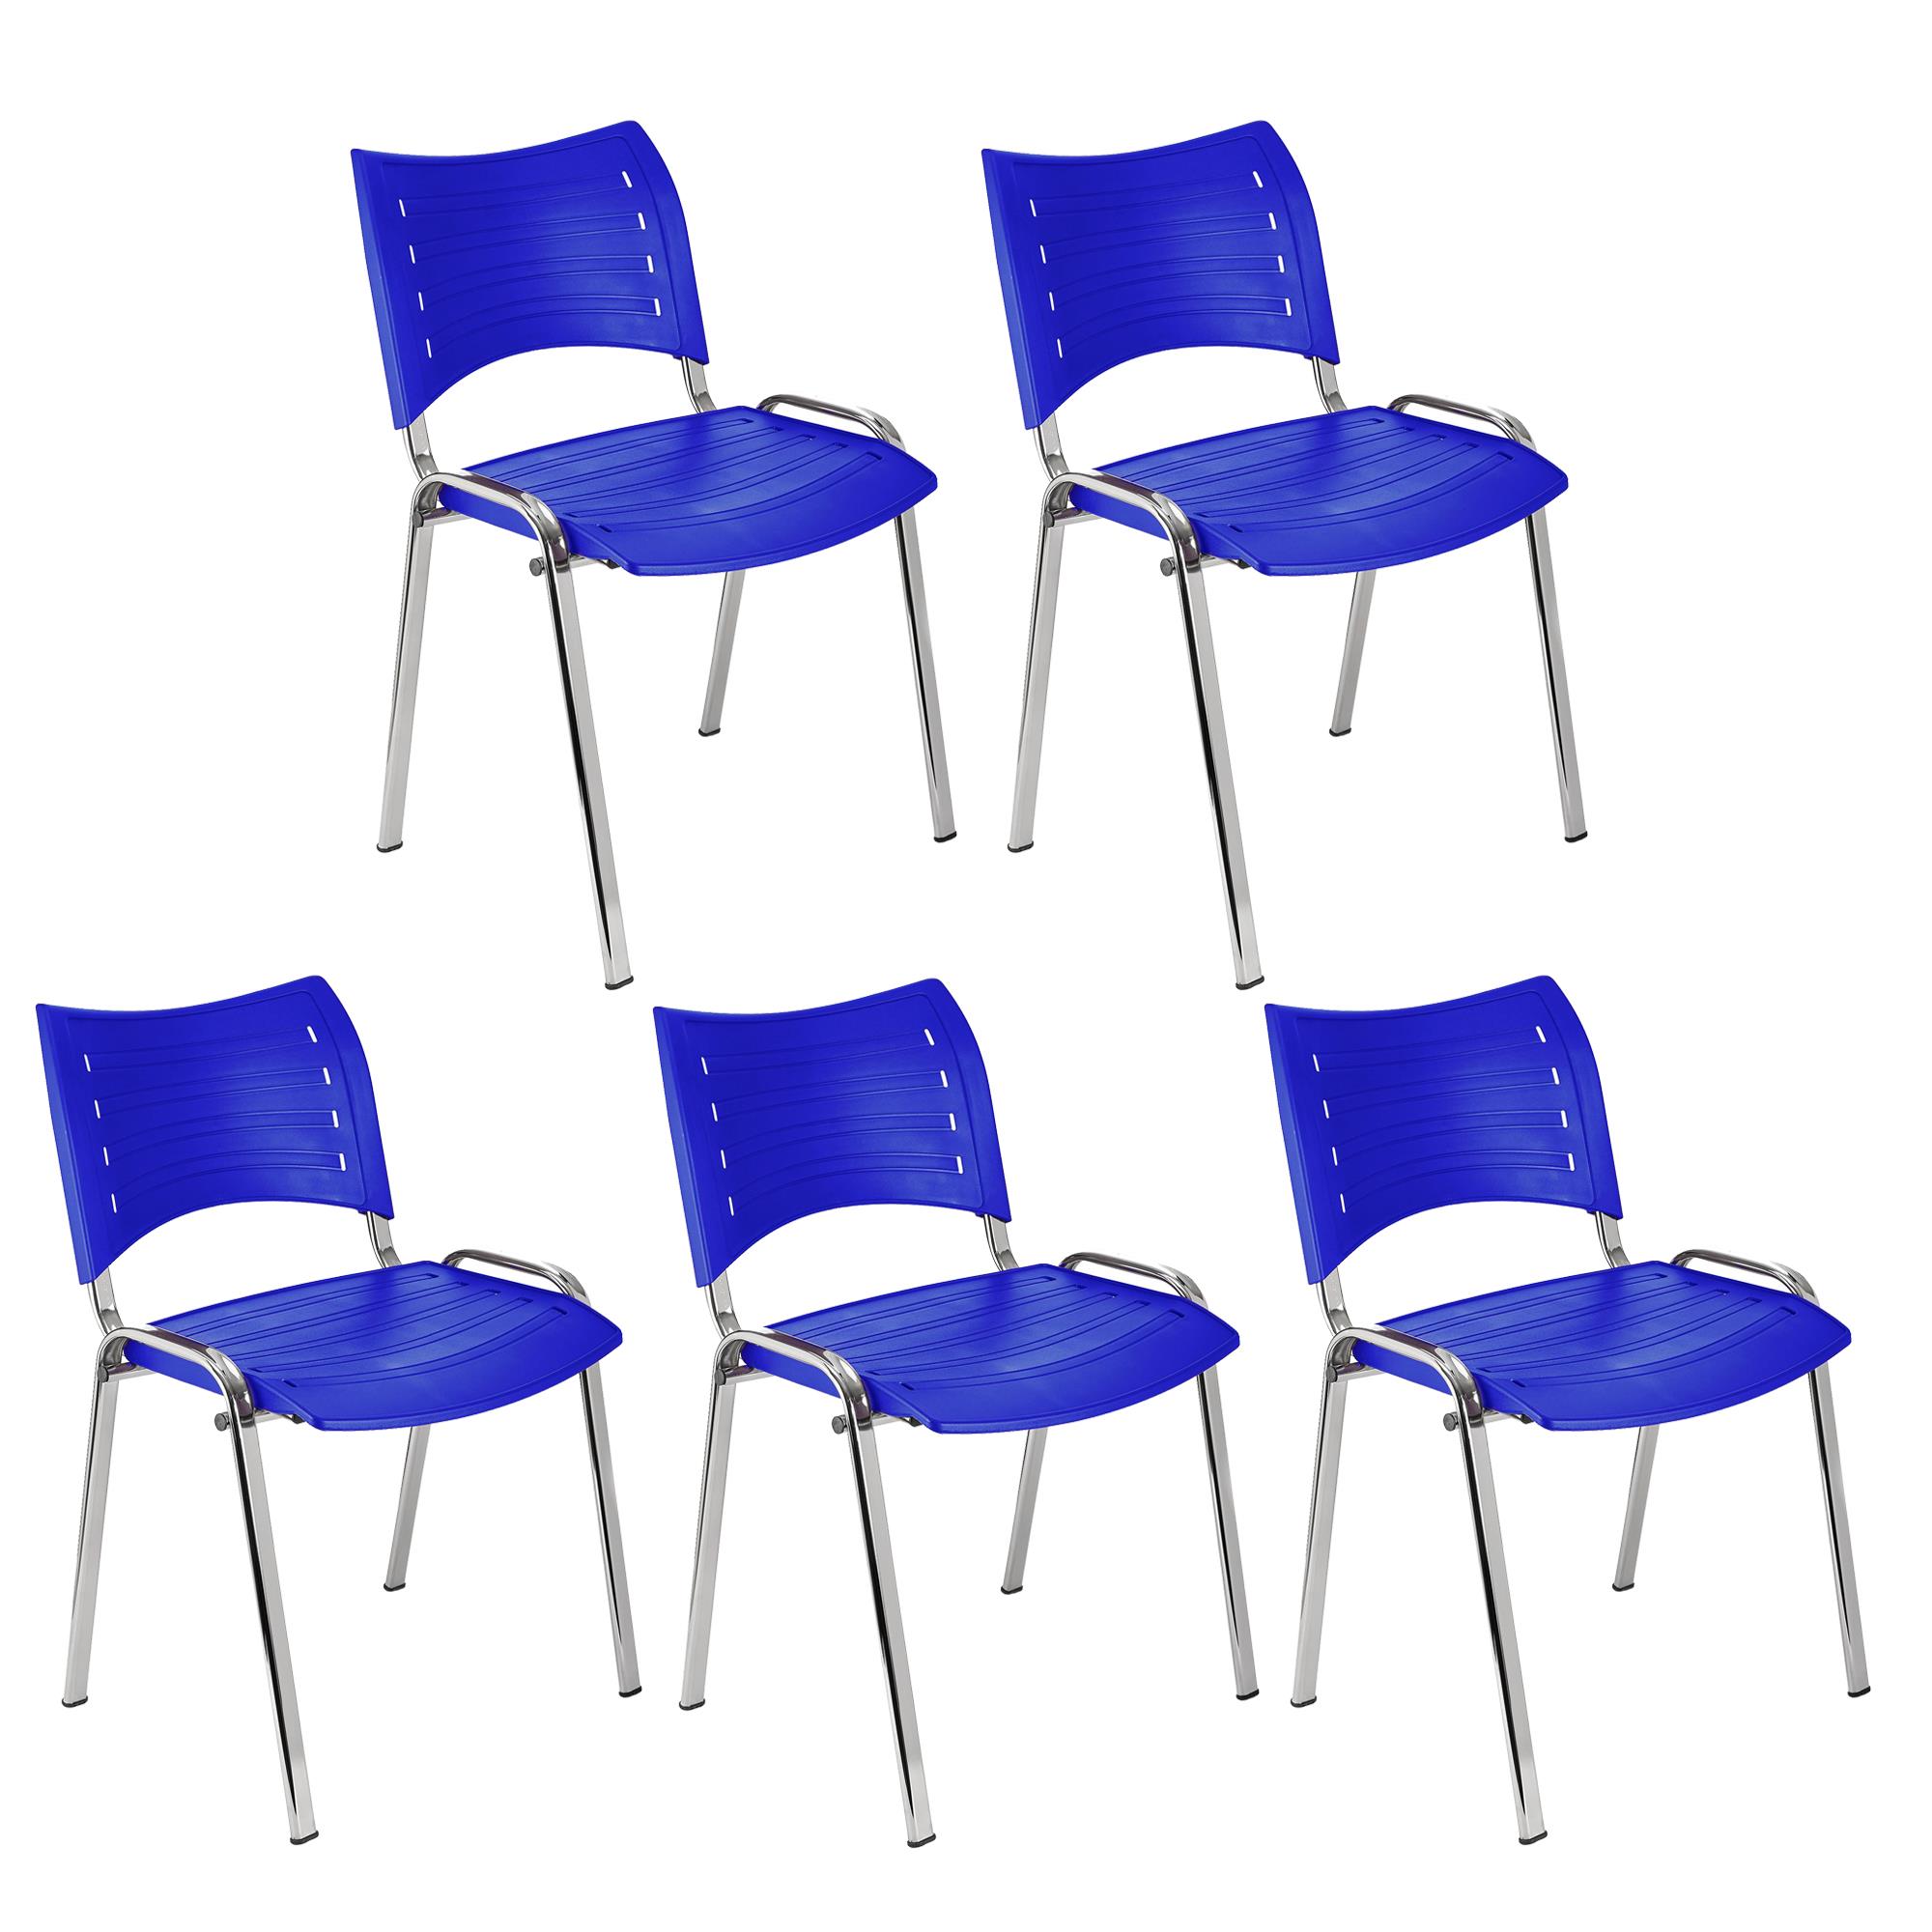 Lote 5 Cadeiras de Visita ELVA, Confortável e Prática, Pernas Cromadas, Cor Azul